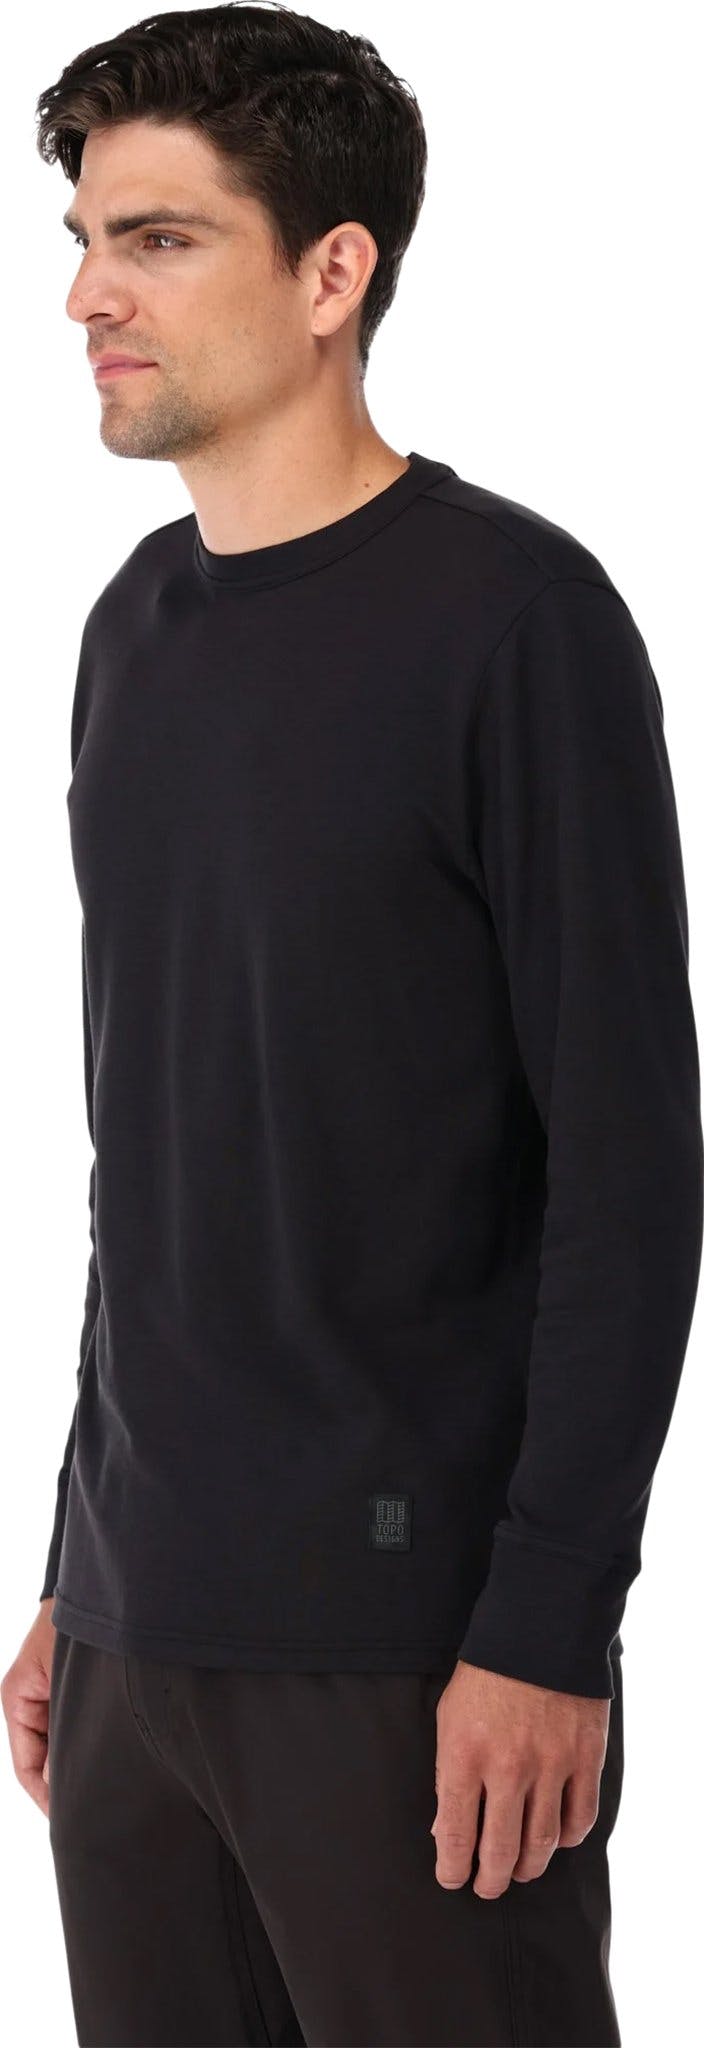 Numéro de l'image de la galerie de produits 6 pour le produit T-shirt en tricot à manches longues Tech - Homme